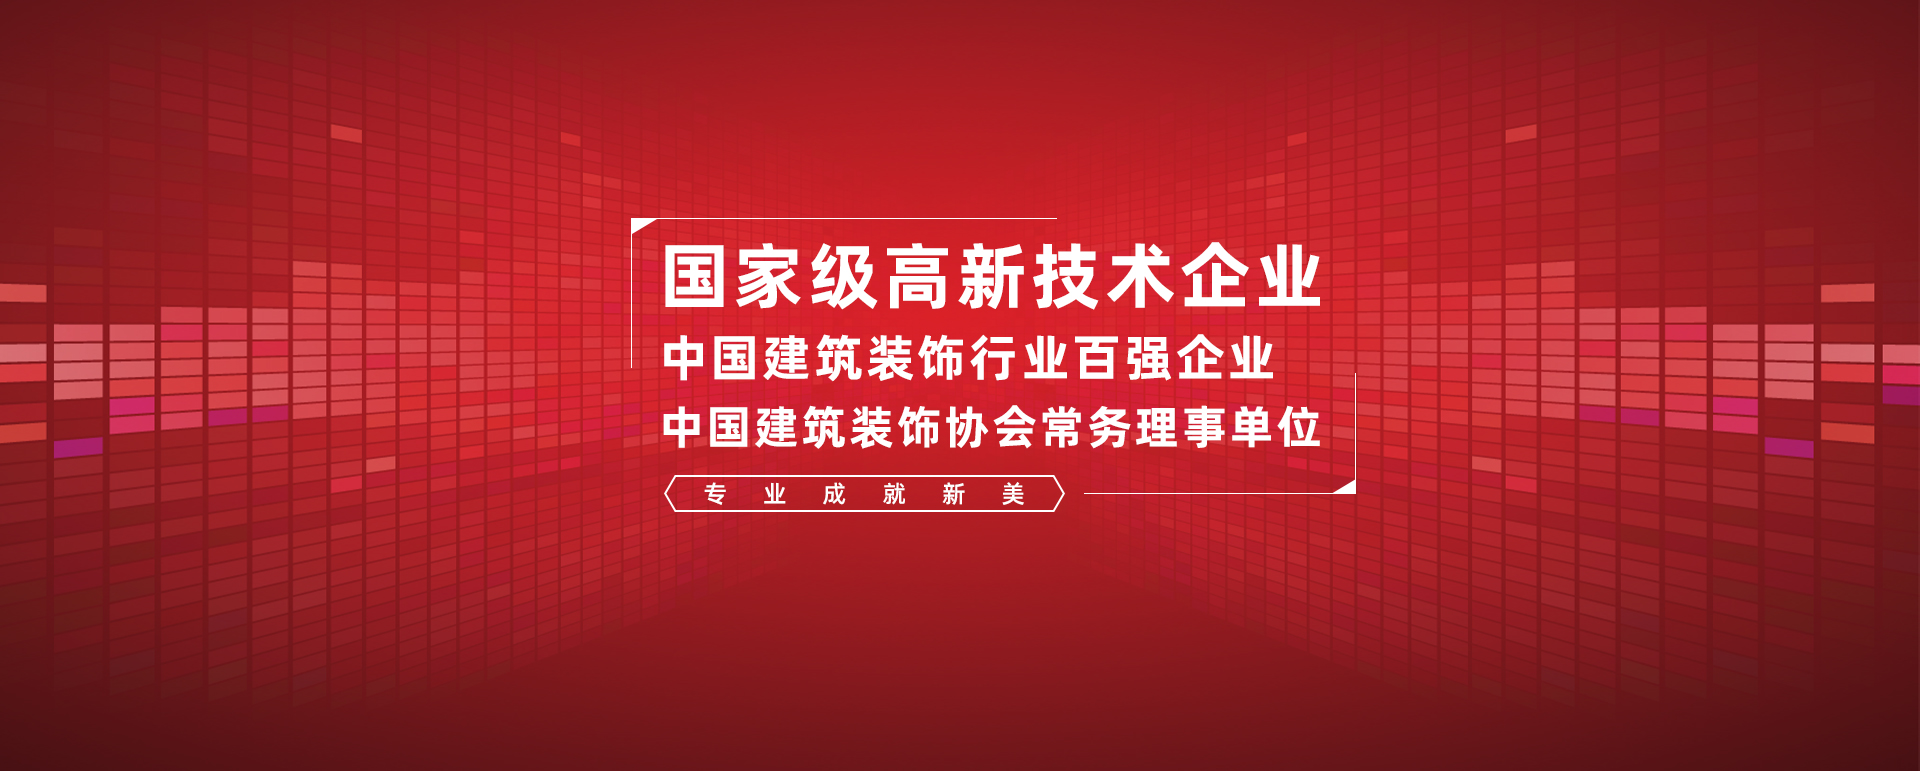 深圳办公司八戒体育·(中国)官方网站设计